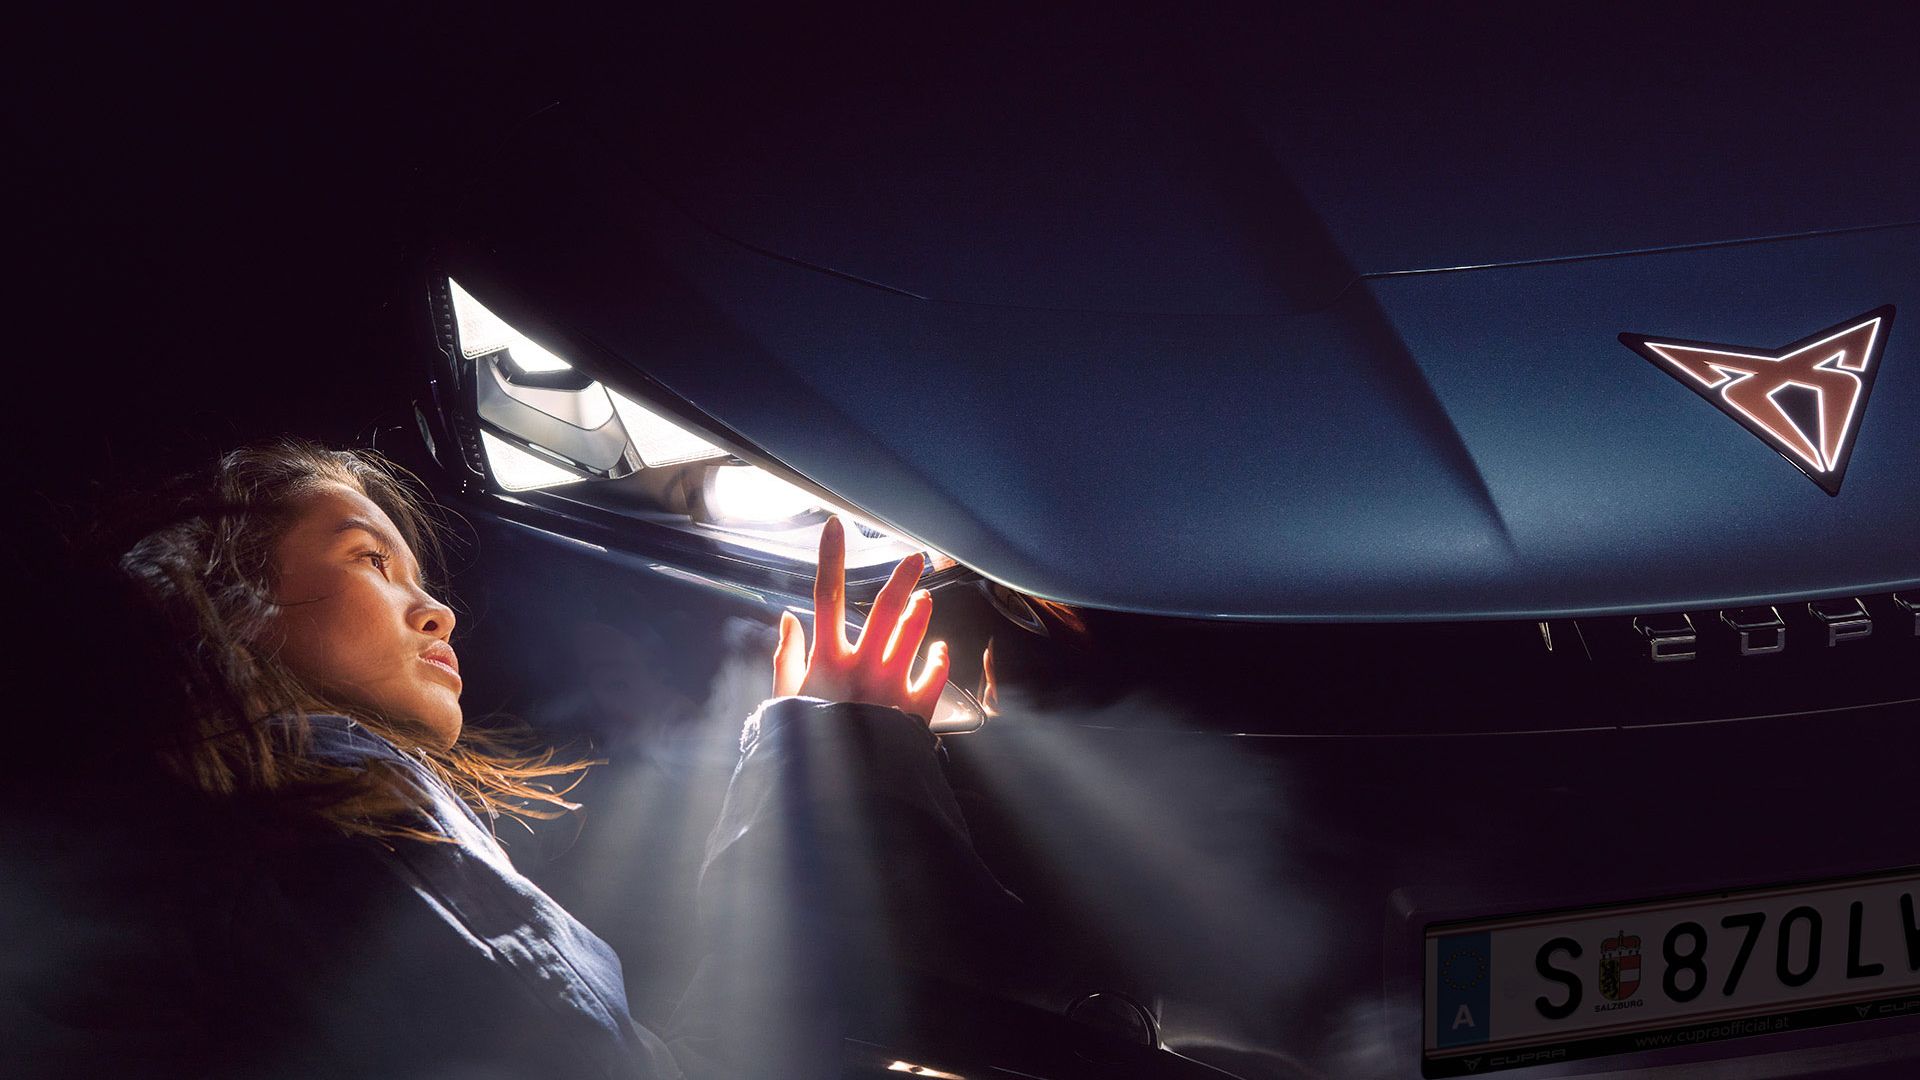 Detailaufnahme des Matrix LED Scheinwerfer eines CUPRA Tavascan, eine Frau befindet sich neben dem Auto.